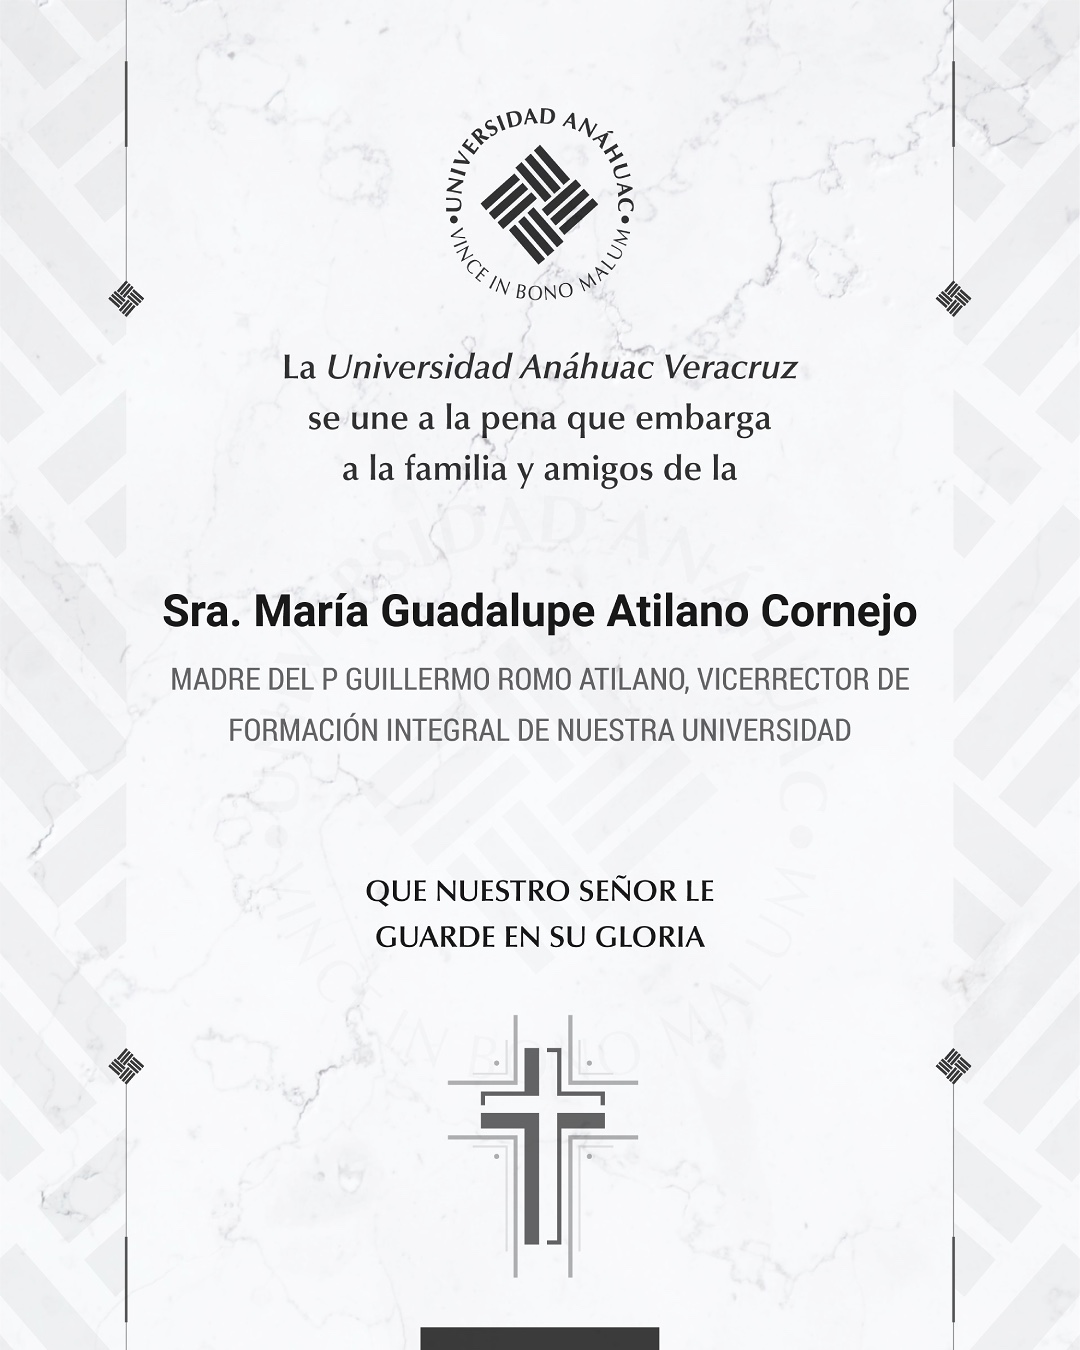 2 / 14 - Sra. María Guadalupe Atilano Cornejo